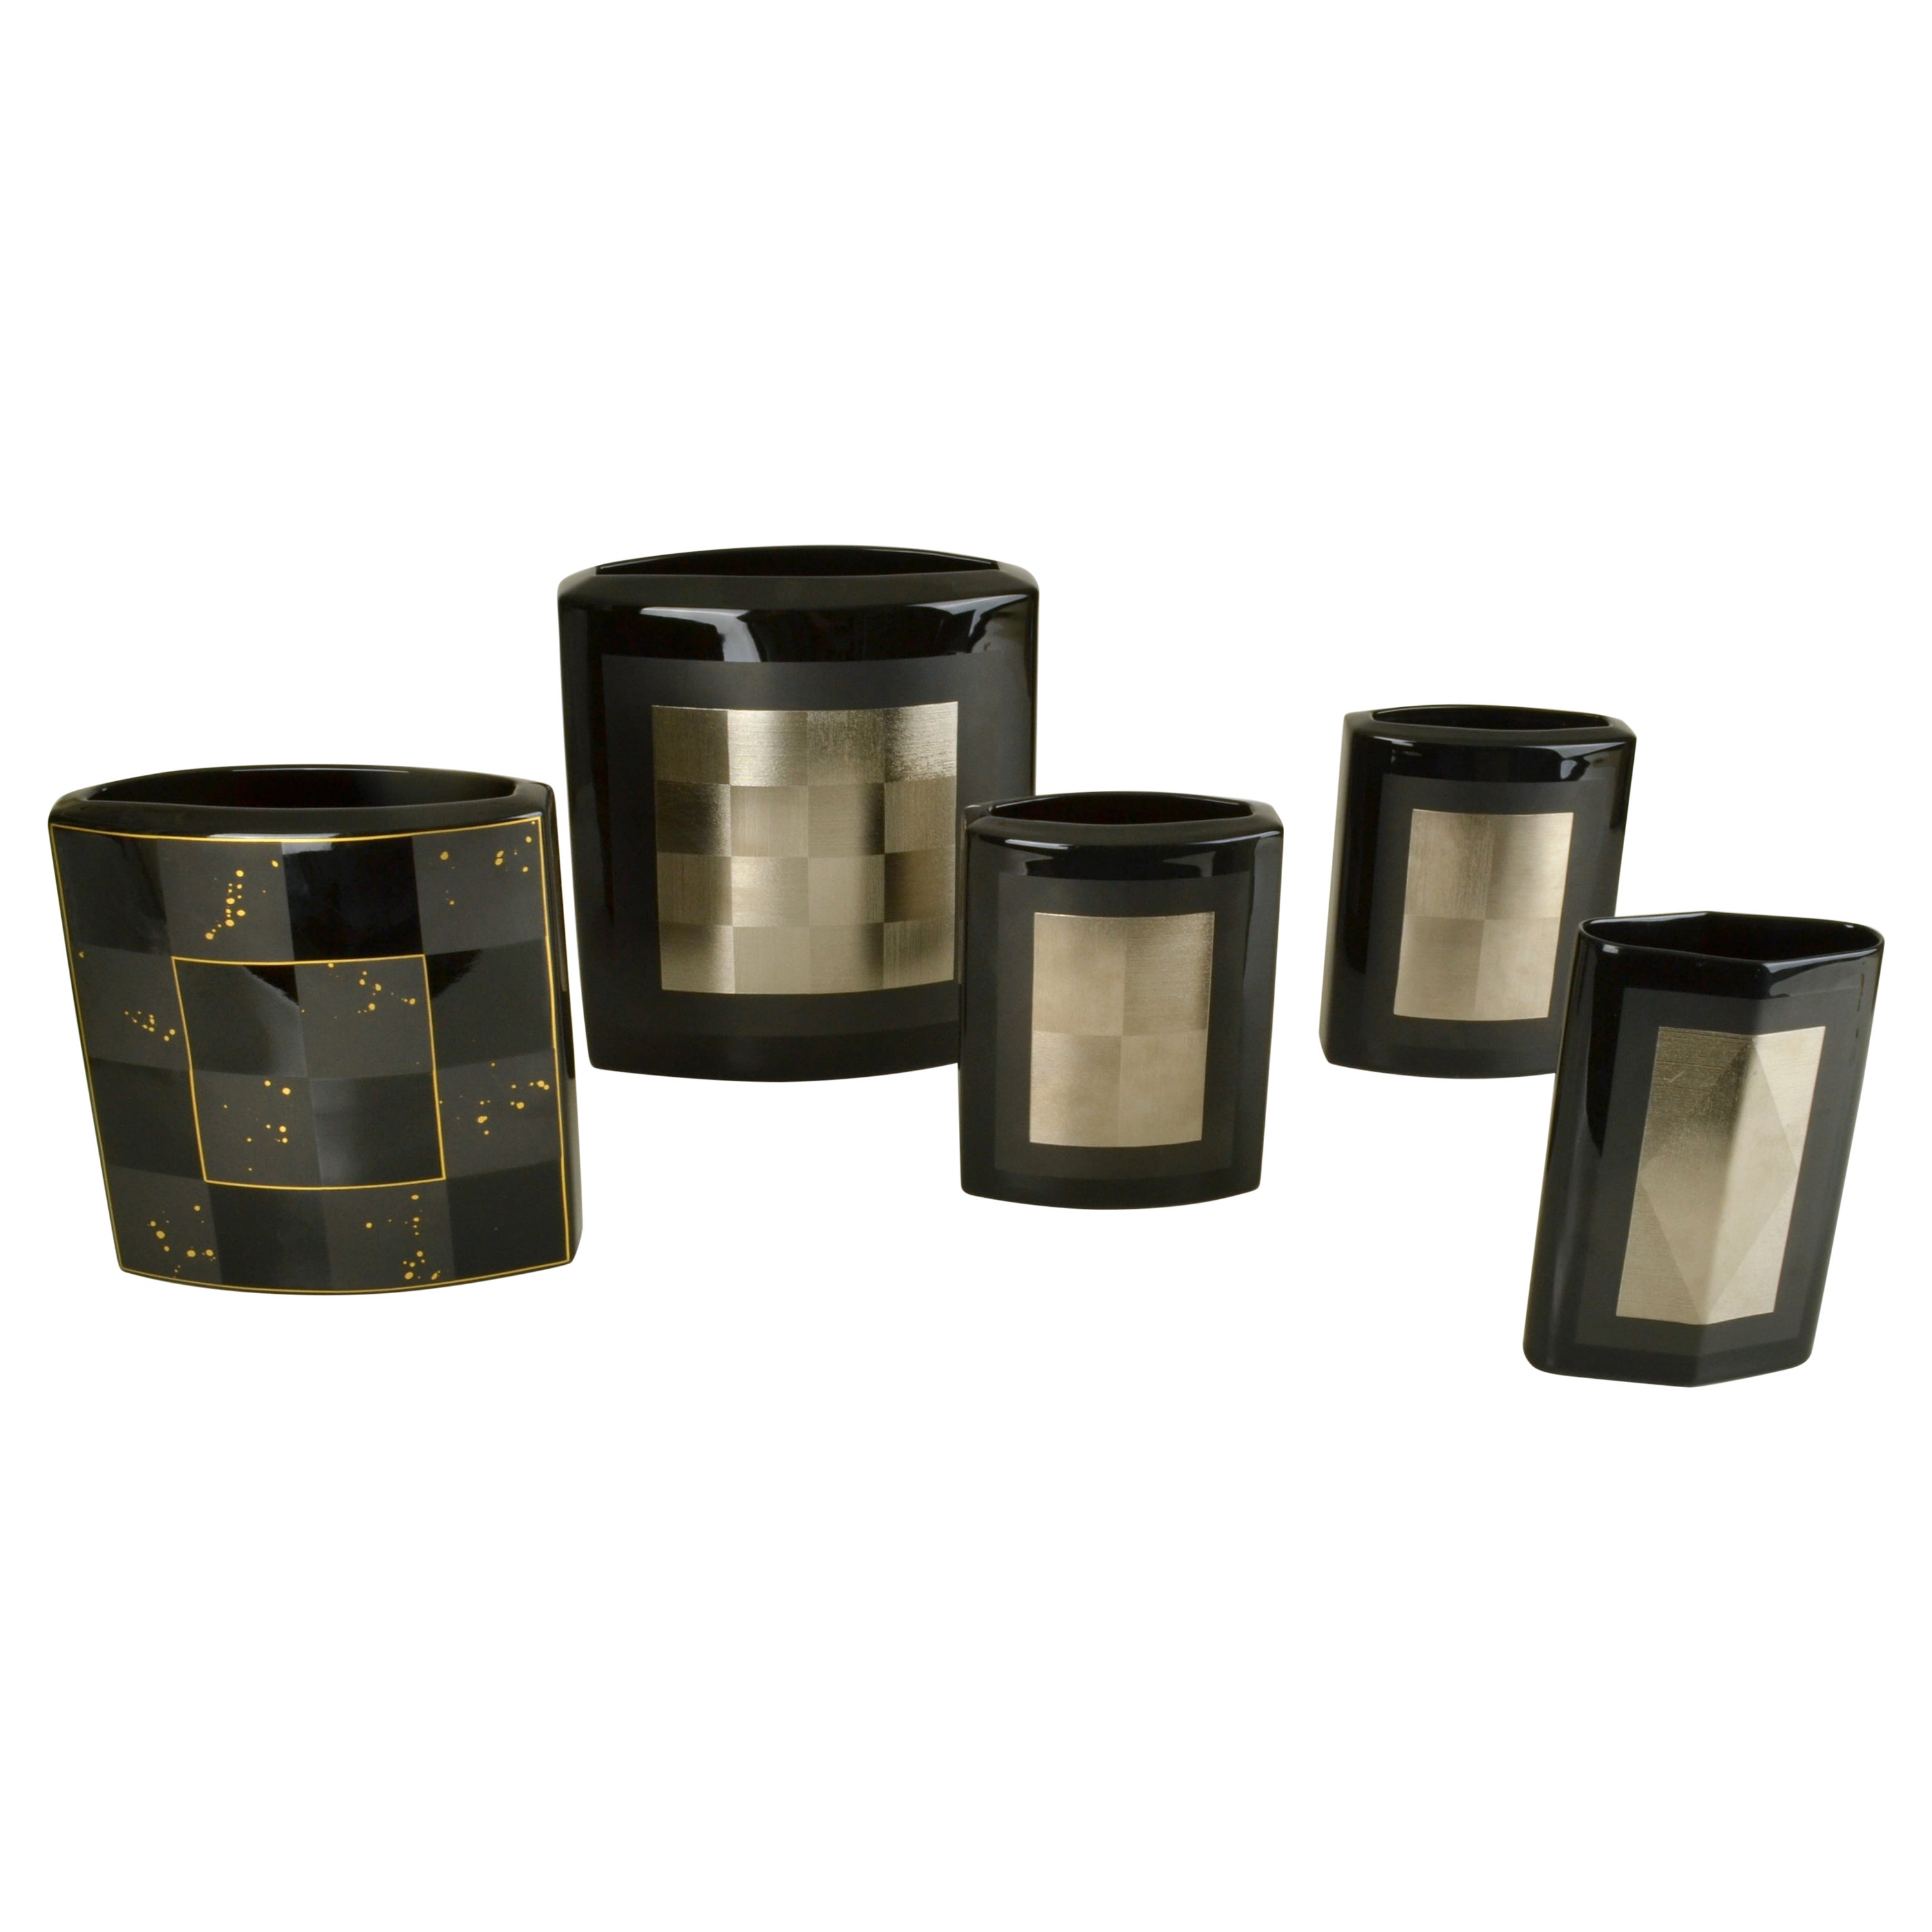 Set of Five Rosenthal Vases Black Studio-Line by Dresler and Treyden